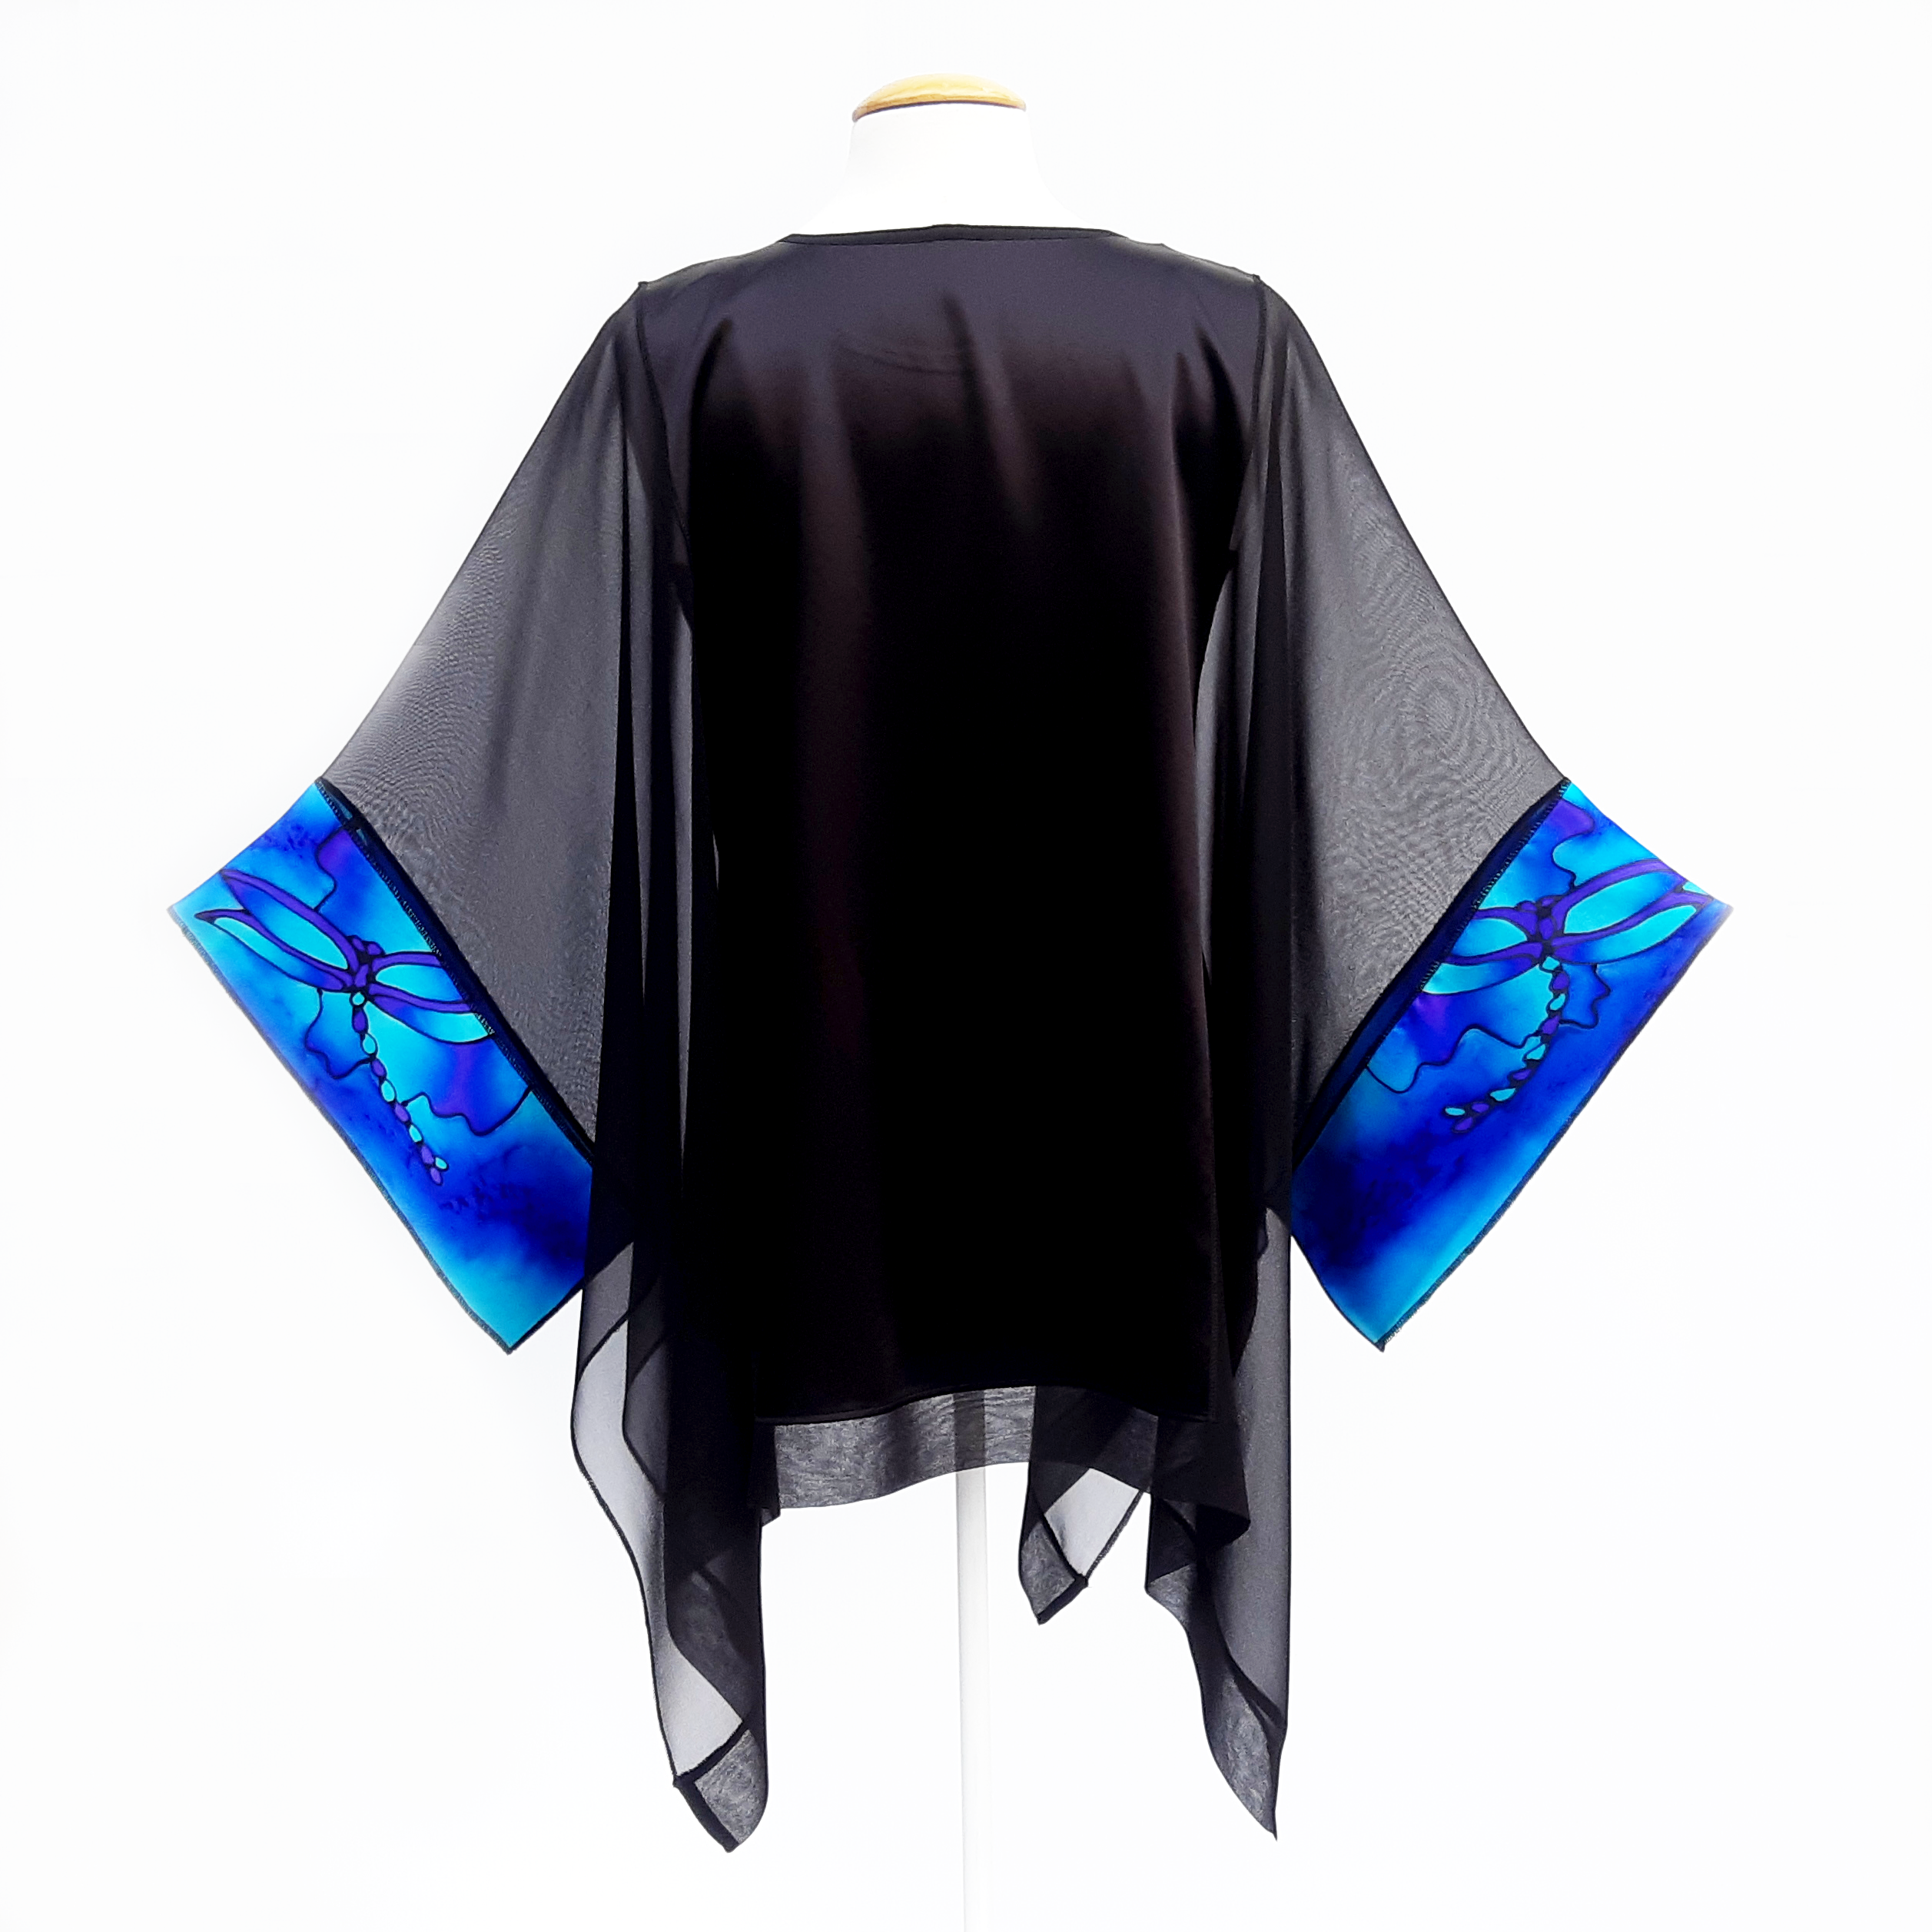 painted silk black caftan top for ladies made in Canada by Lynne Kiel